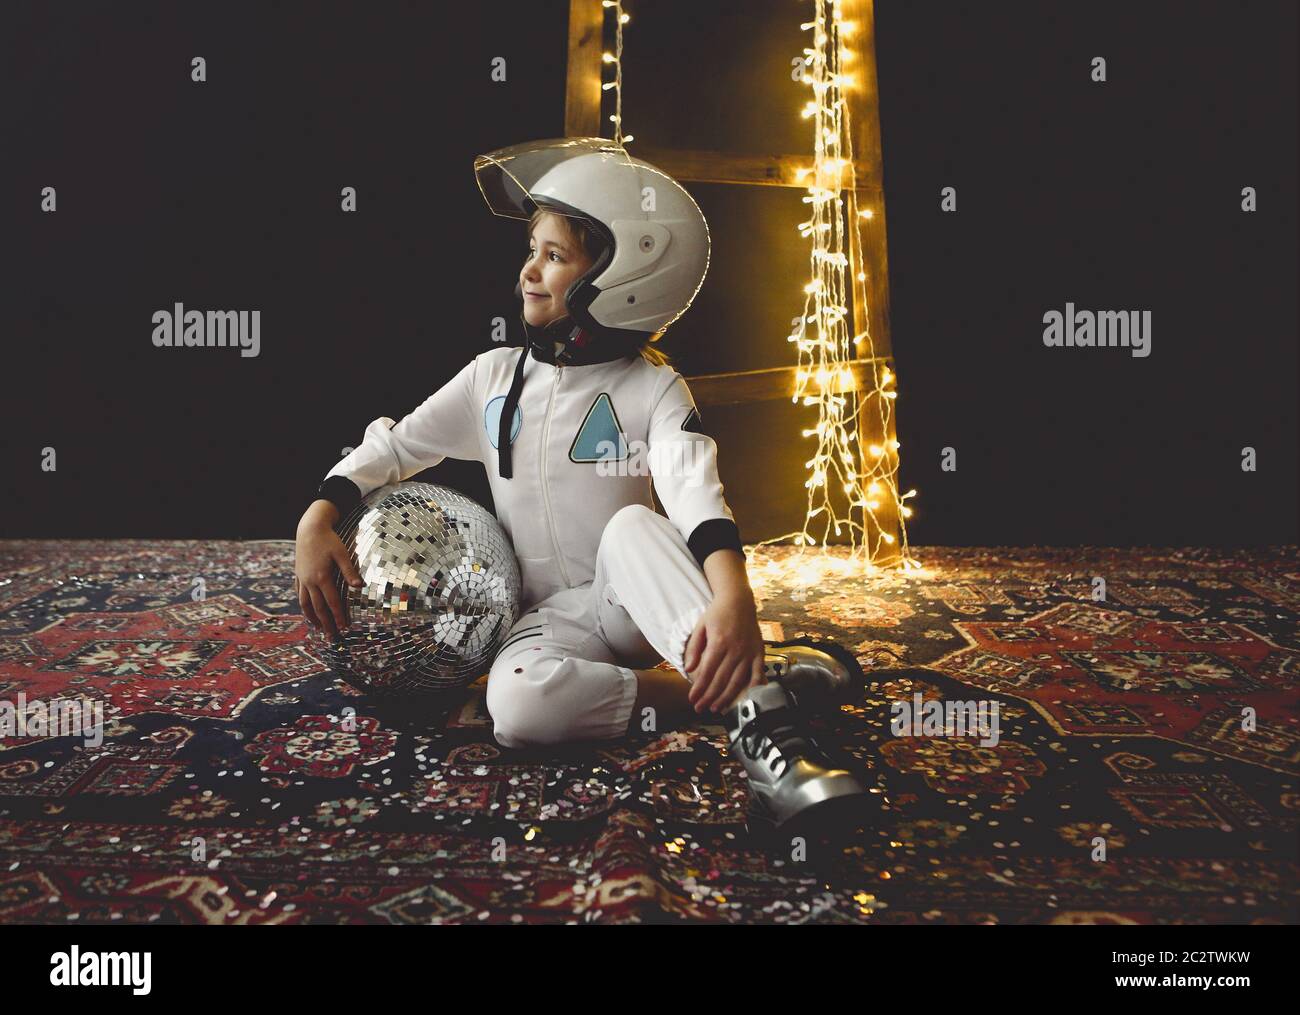 Astronauta futurista niña con uniforme blanco de longitud completa y casco Foto de stock